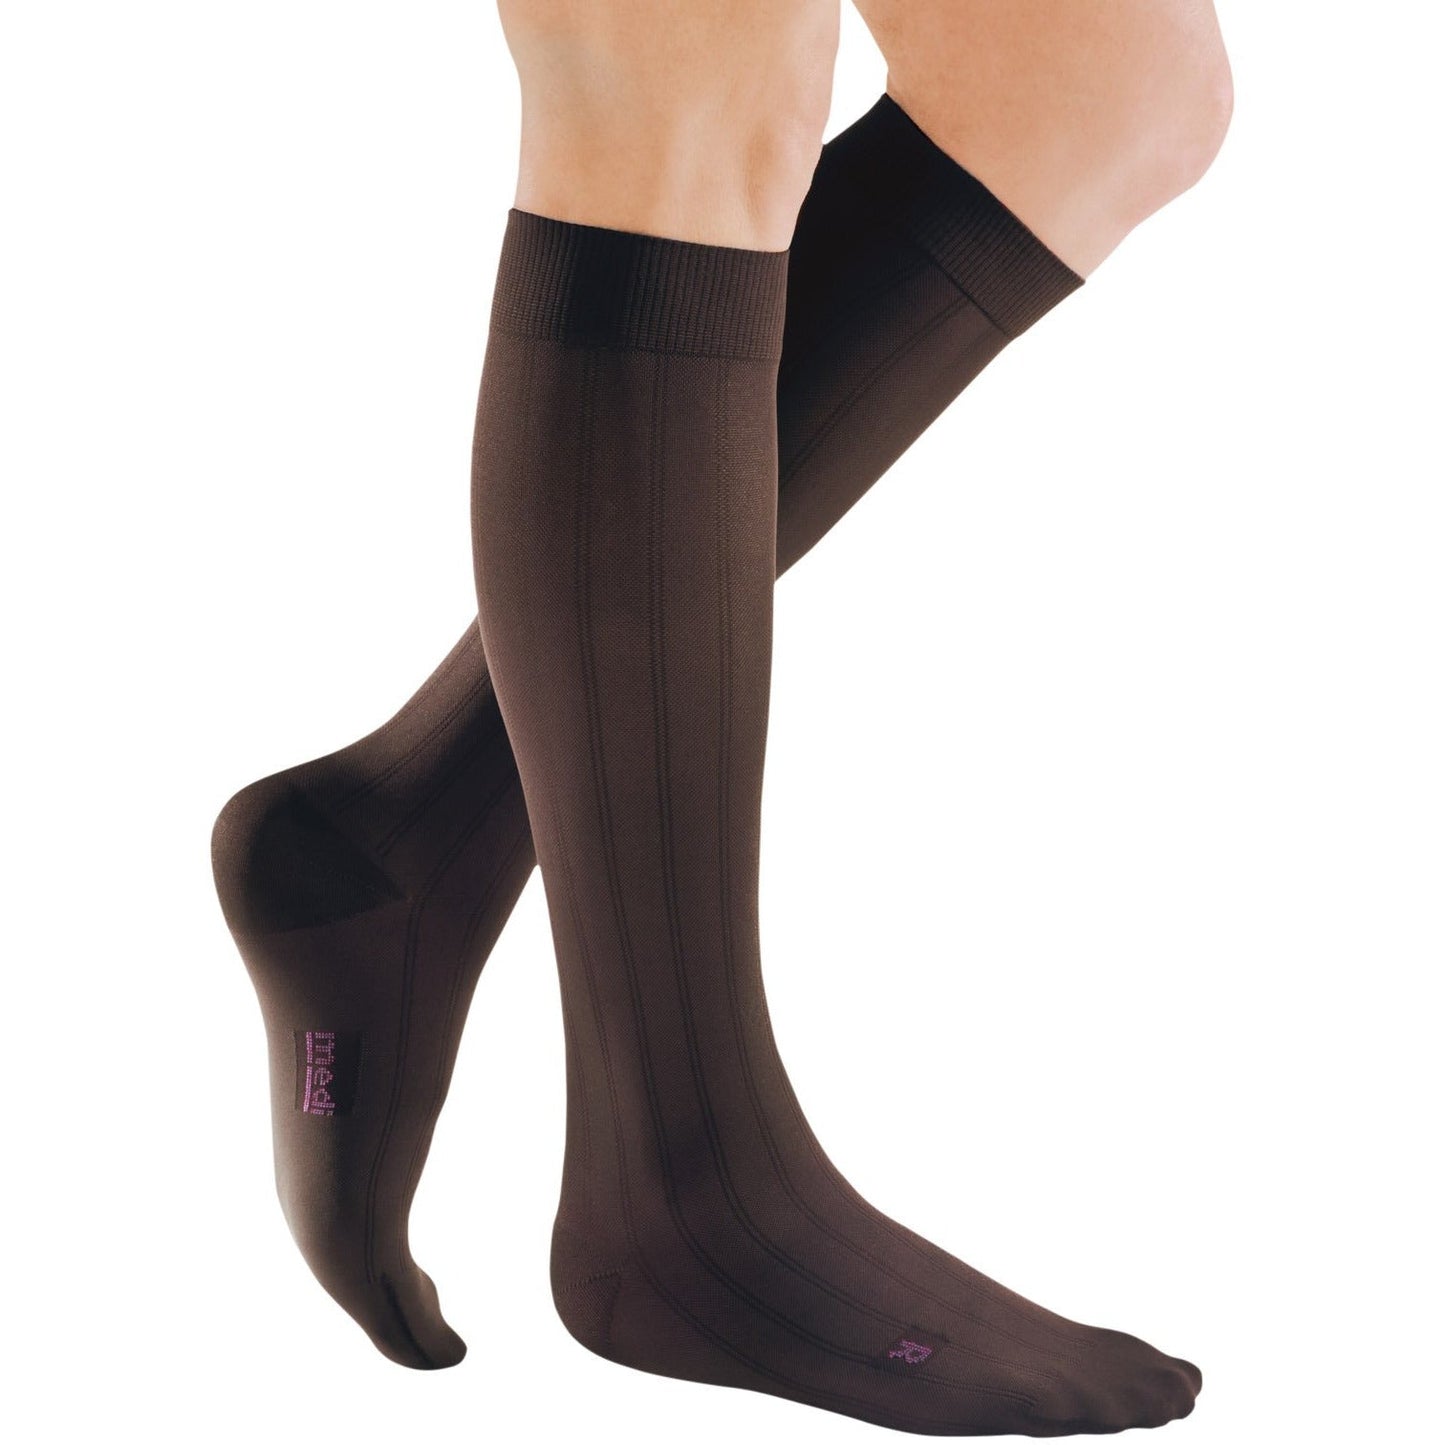 Mediven for Men Classic Knee High 20-30 mmHg [OVERSTOCK]